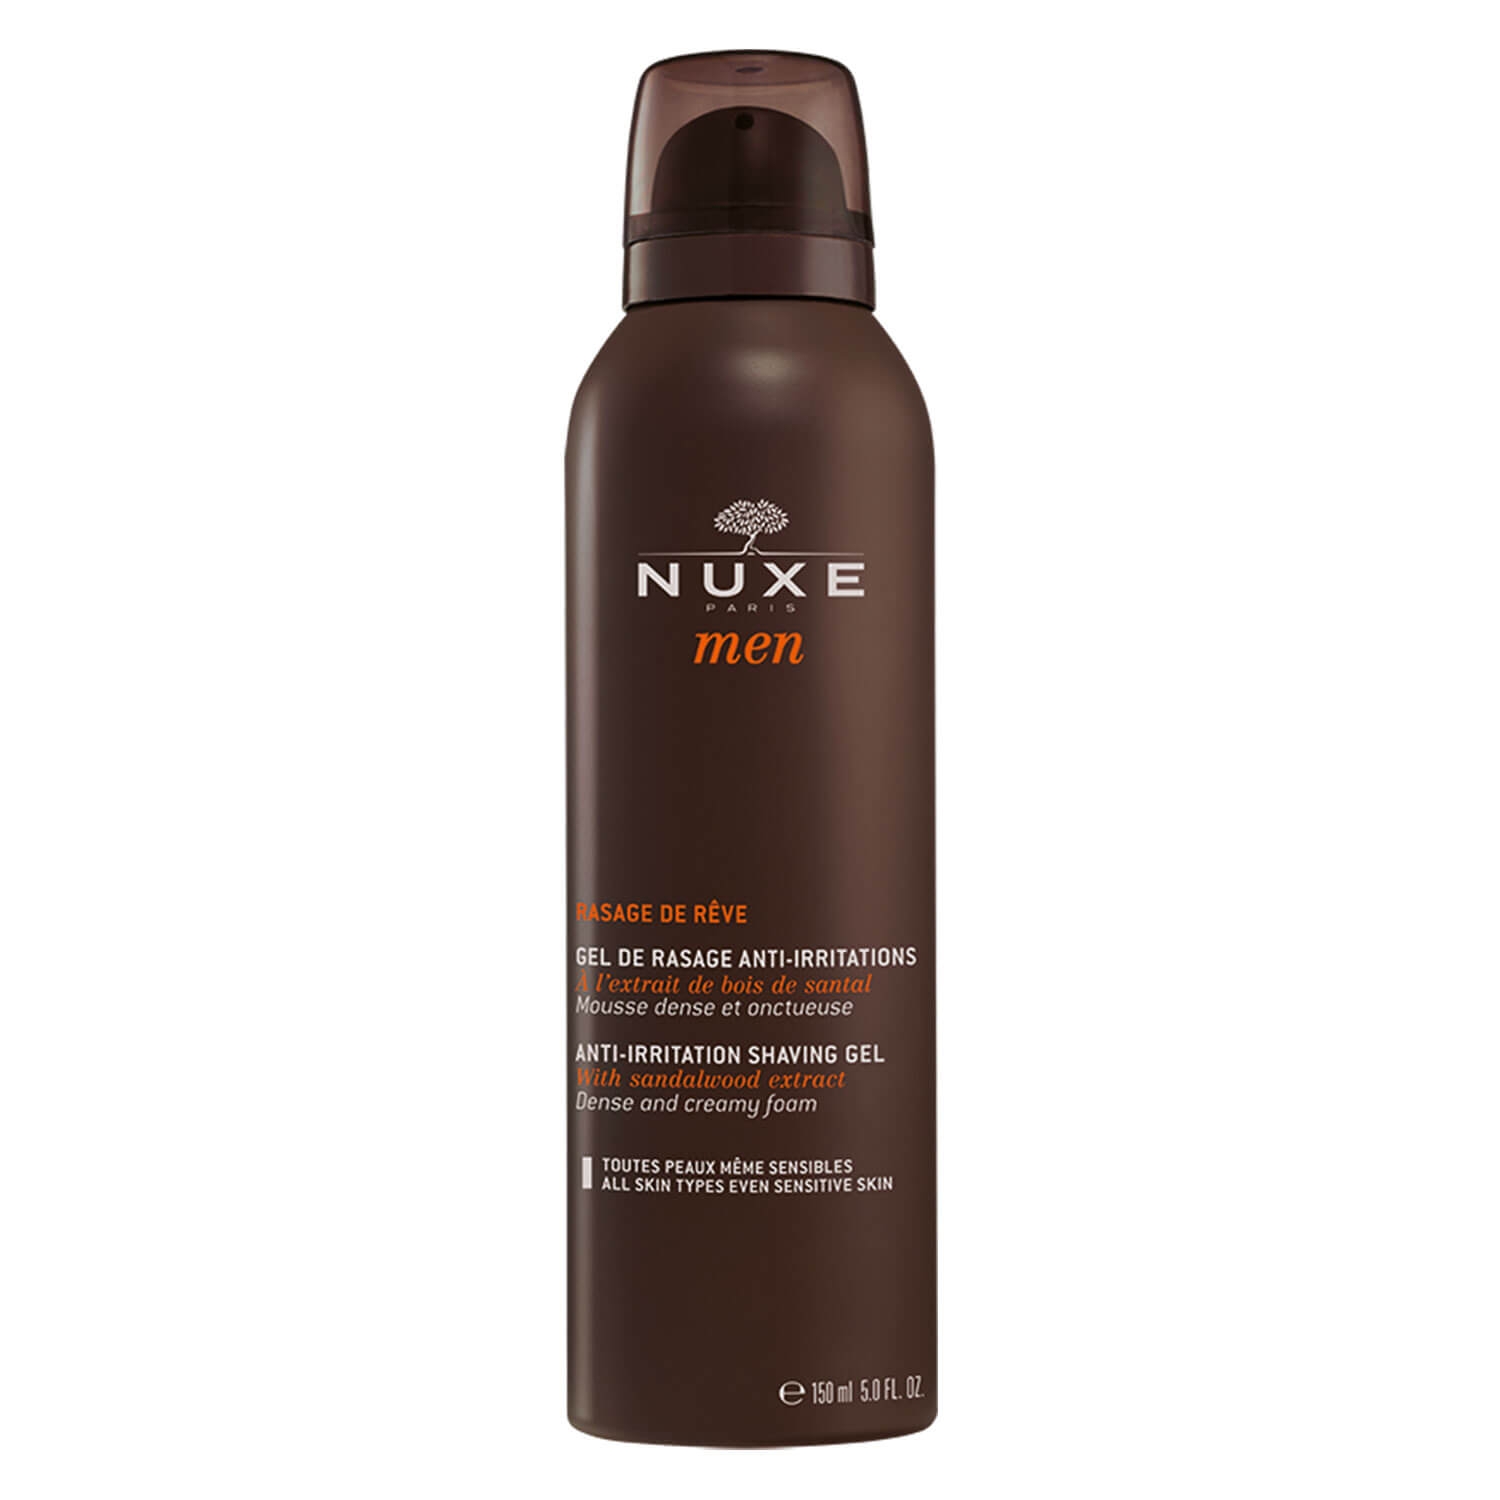 Produktbild von Nuxe Men - Gel de rasage anti-irritations